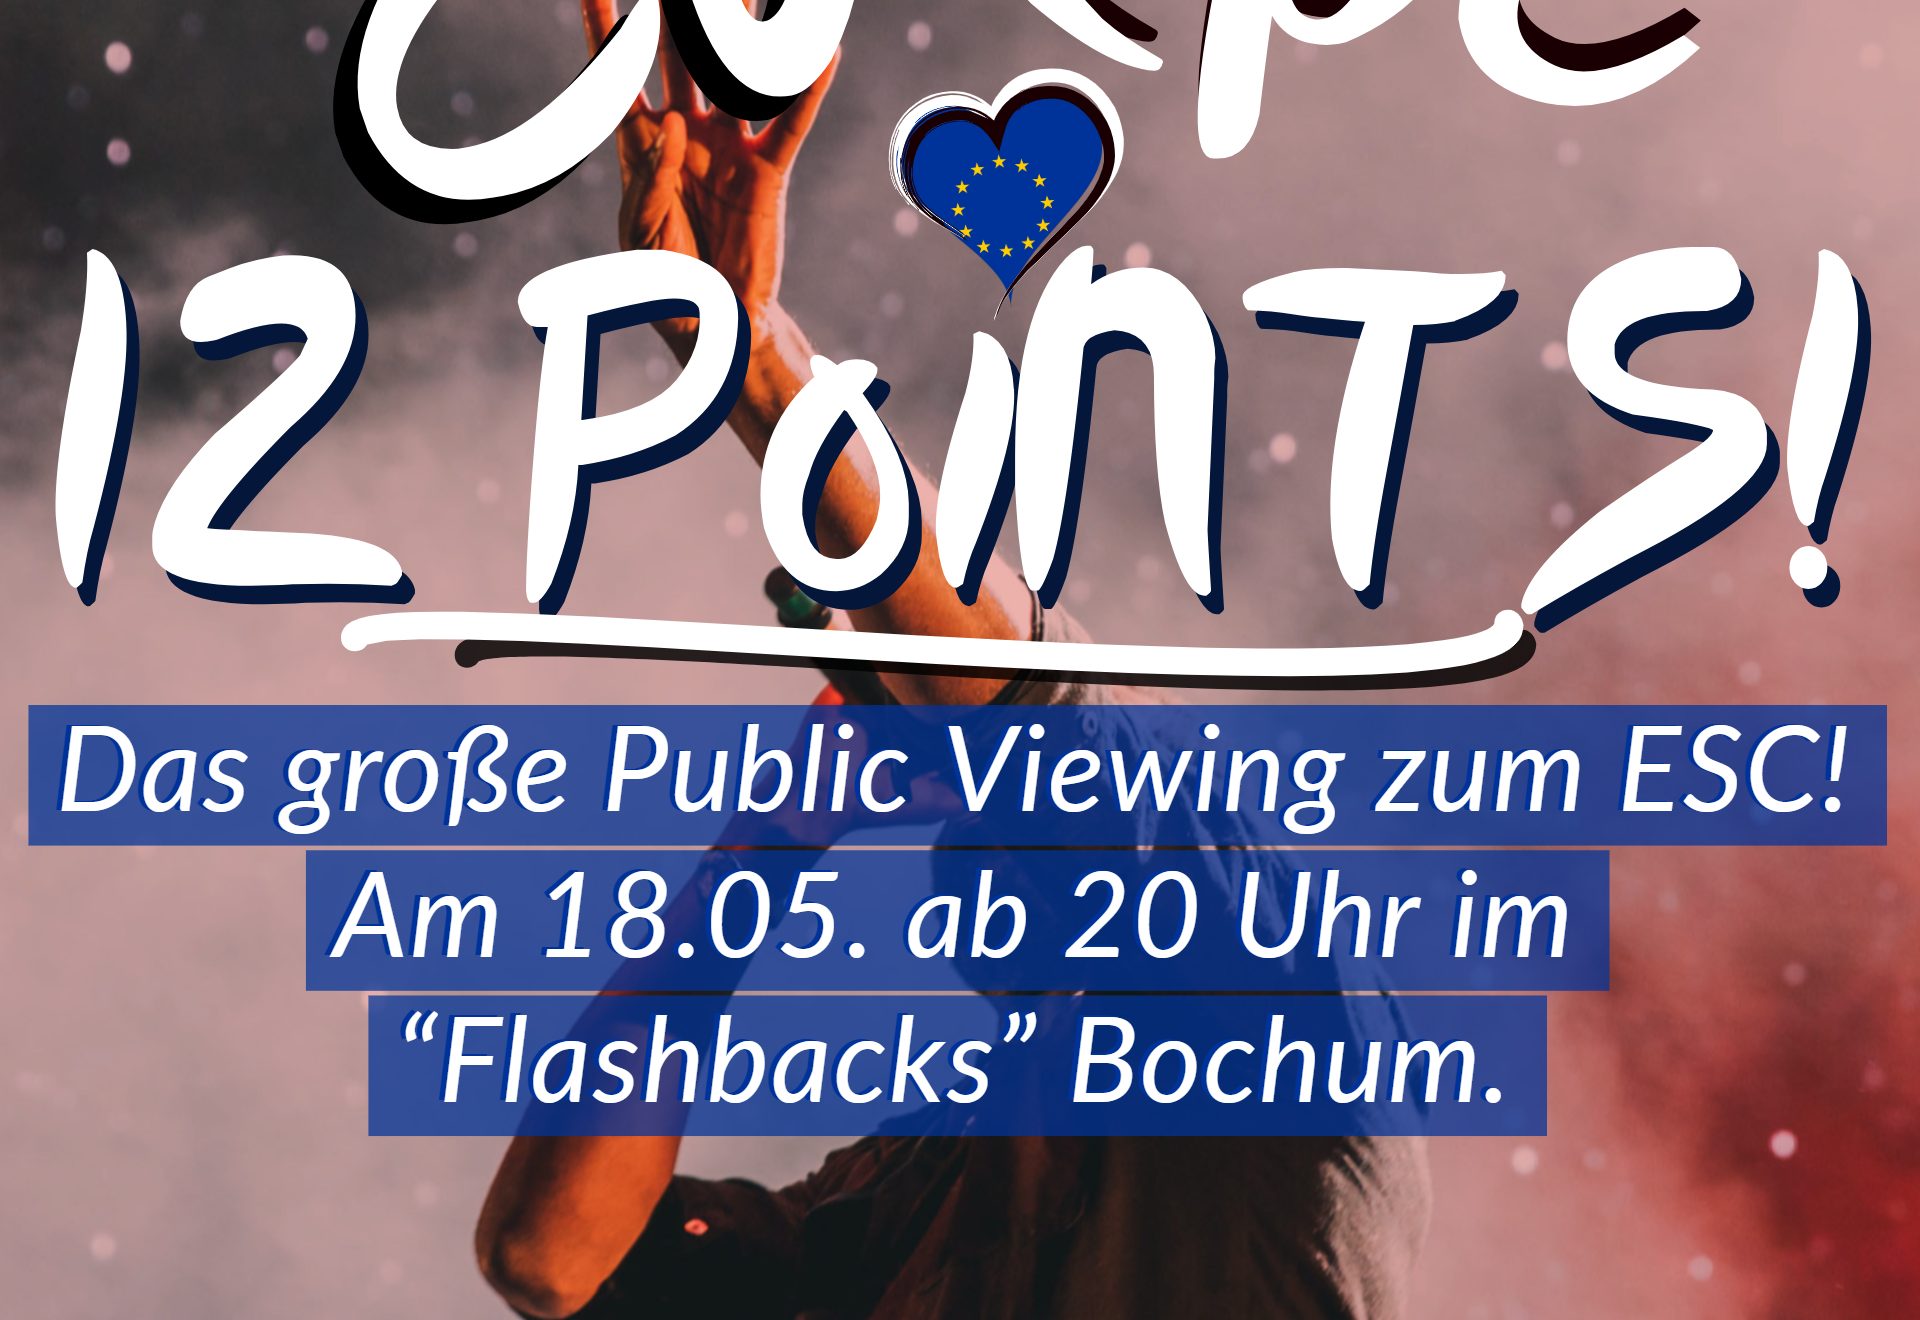 Europe 12 Points: Public Viewing zum ESC (Flyer - Vorderseite)